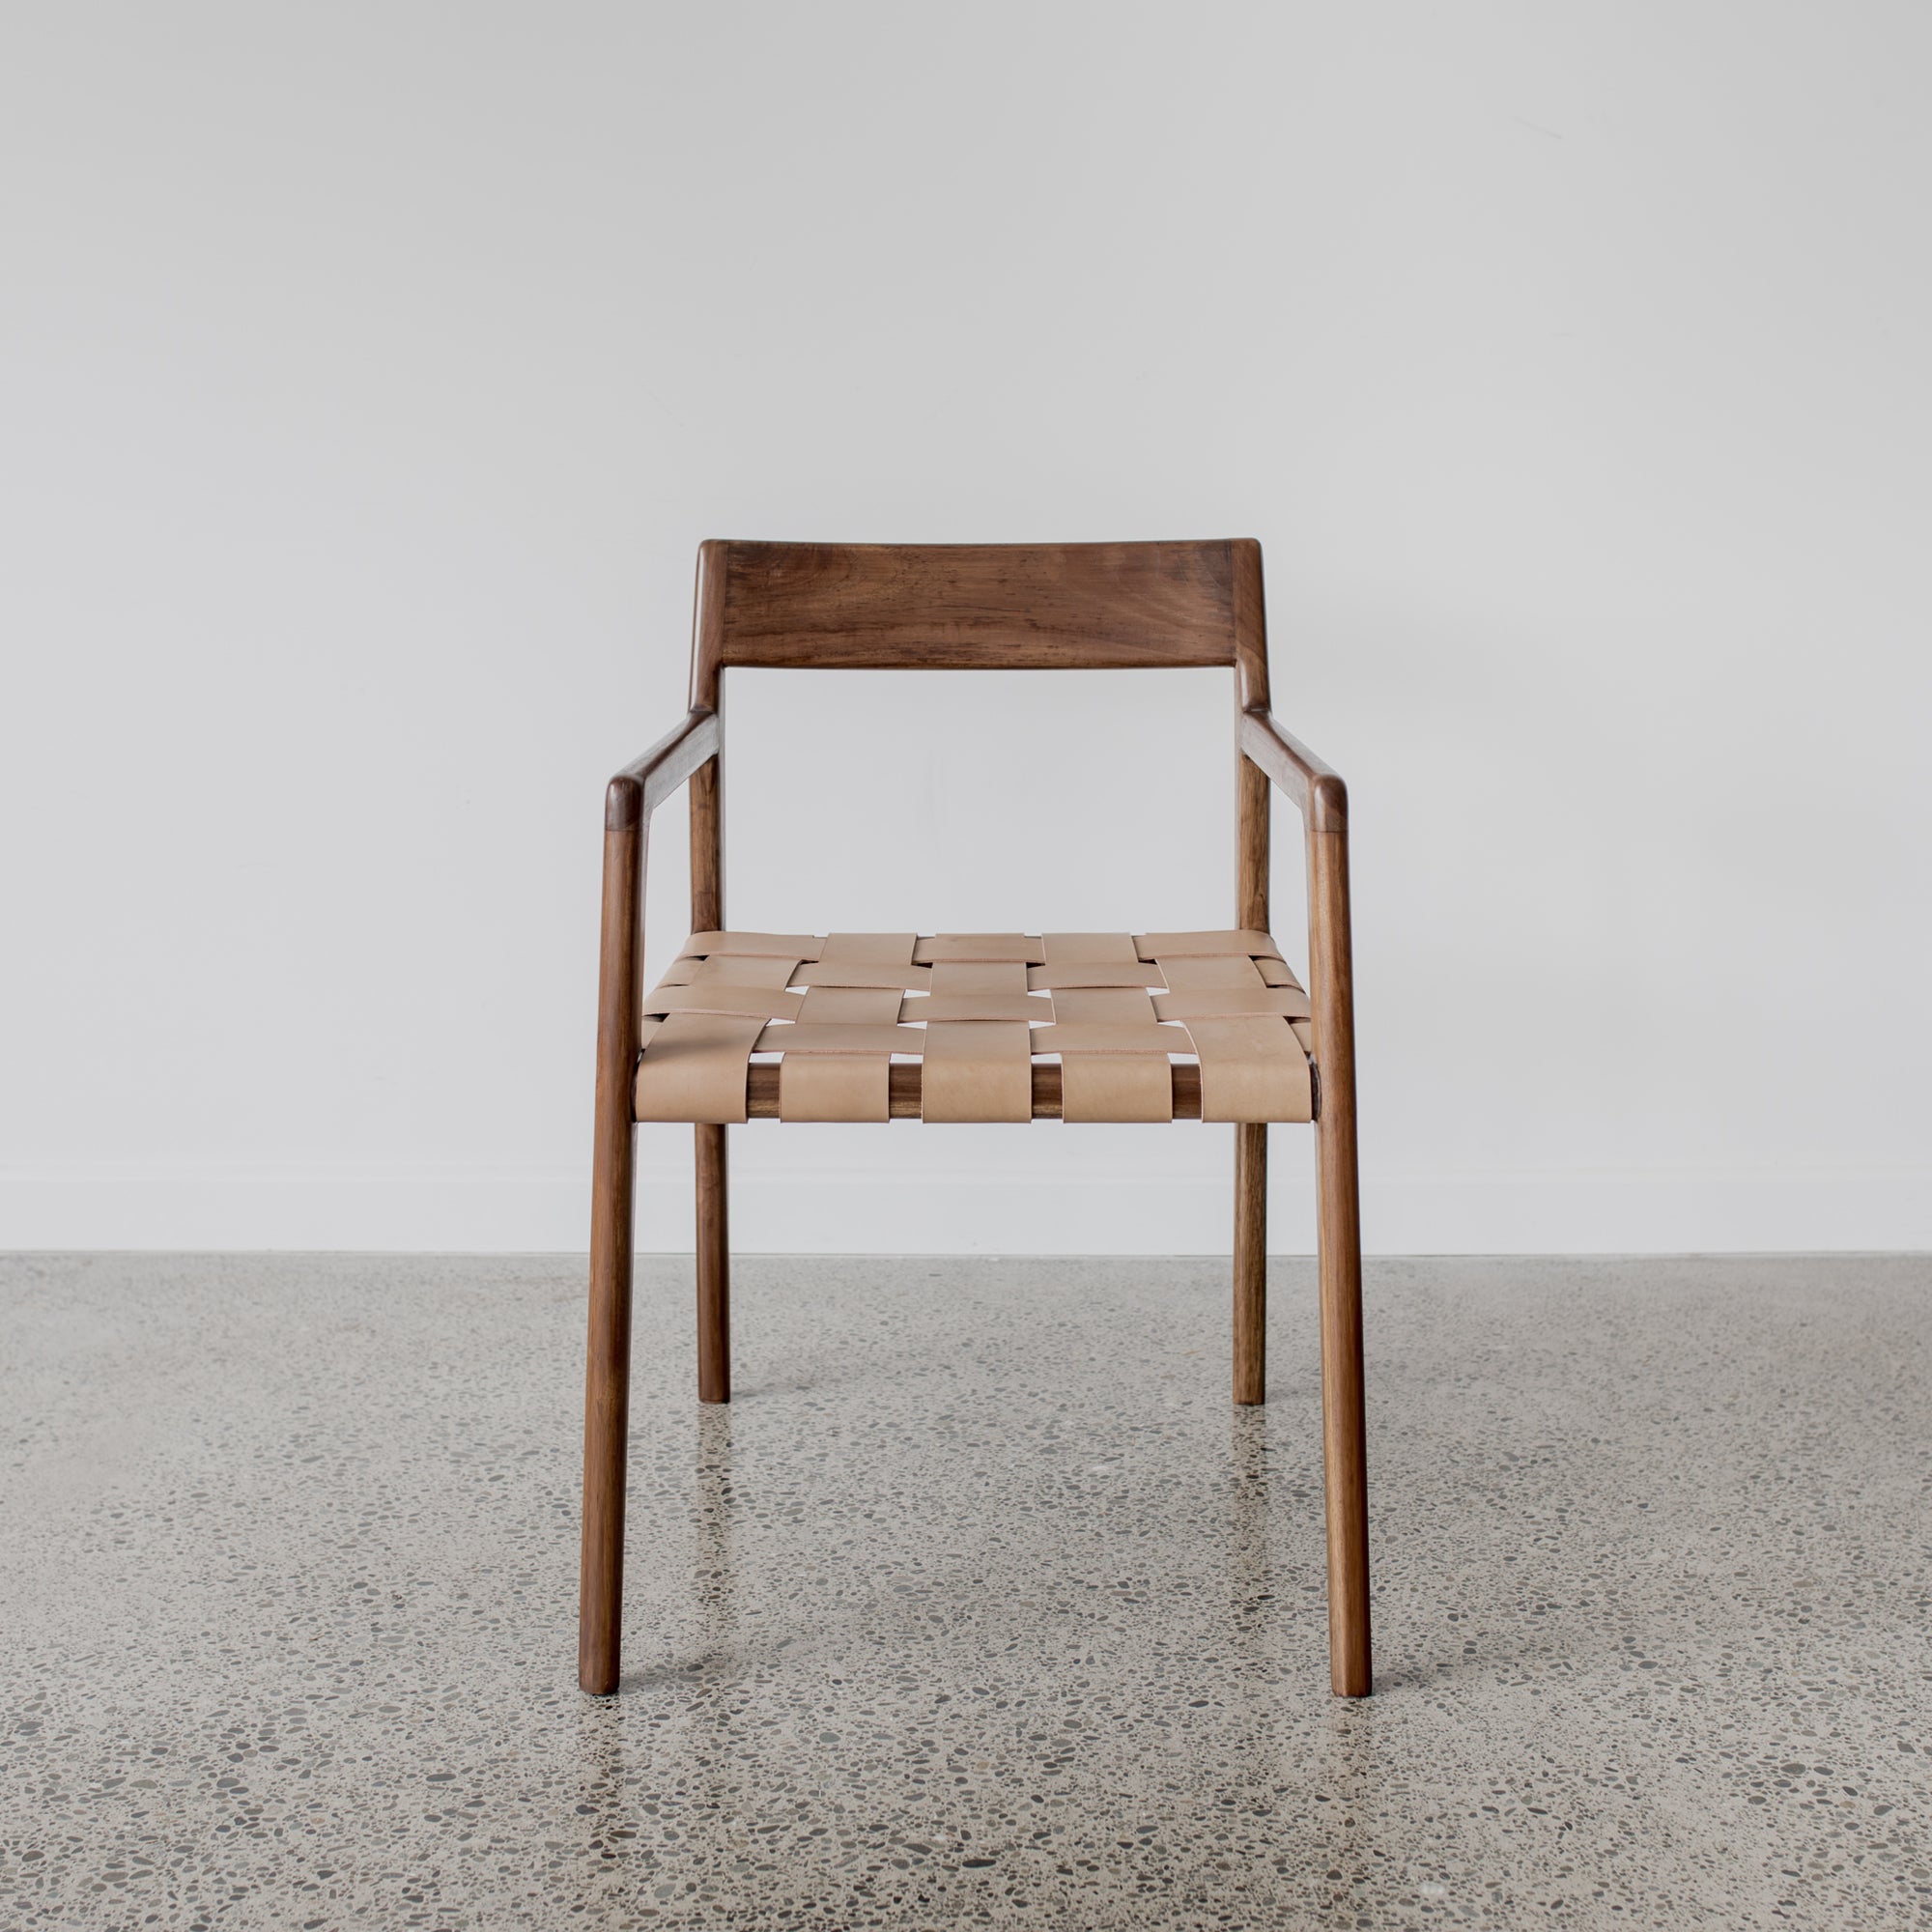 Serengeti Arm Chair (tan leather, vintage brown wood)